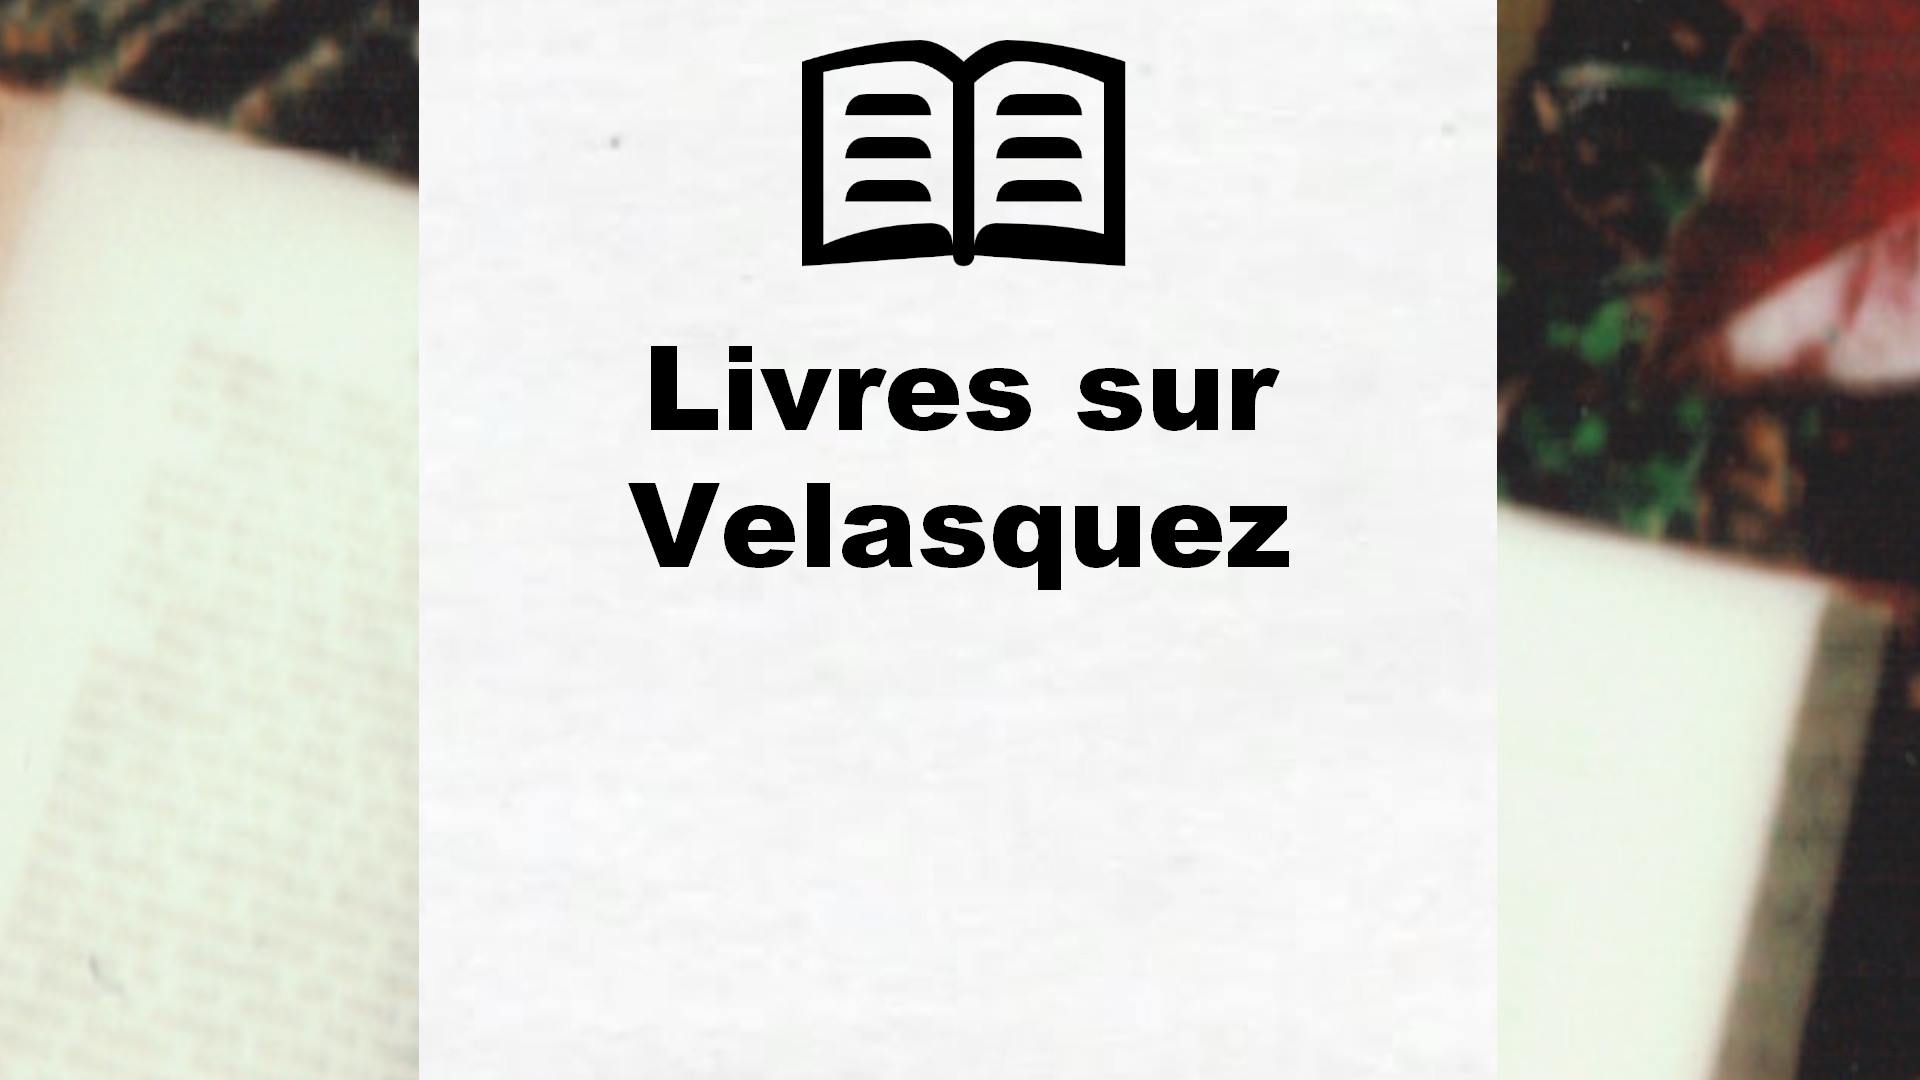 Livres sur Velasquez